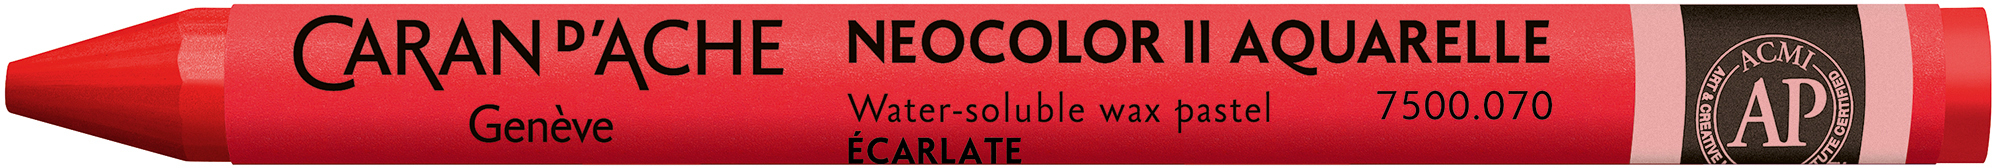 CARAN D'ACHE Crayons de cire Neocolor II 7500.070 écarlate